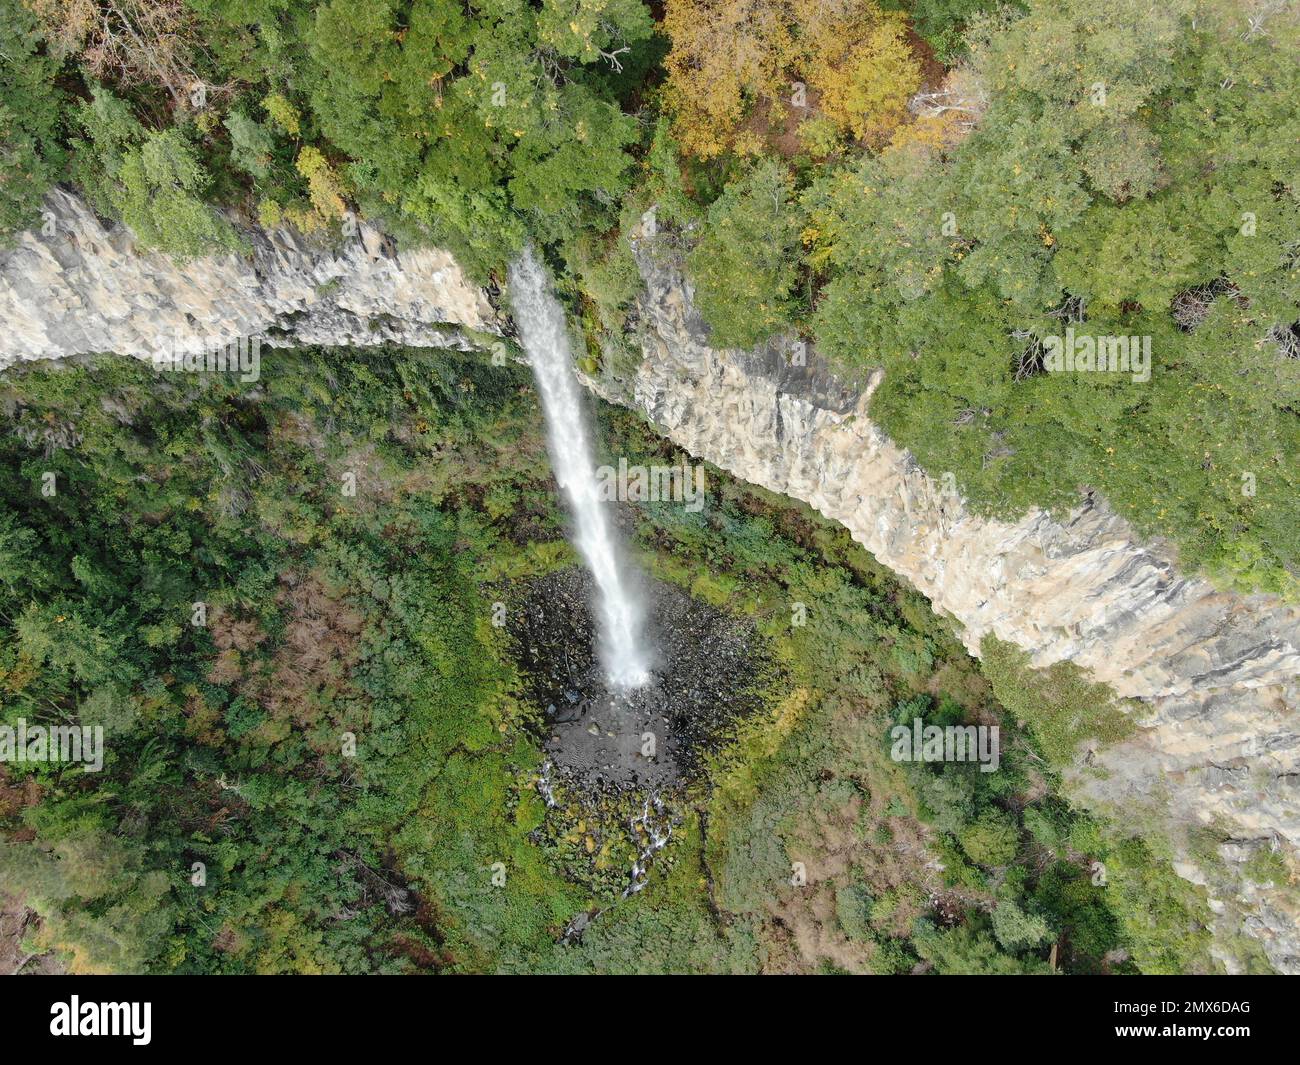 La cascada del sur de Chile Stock Photo